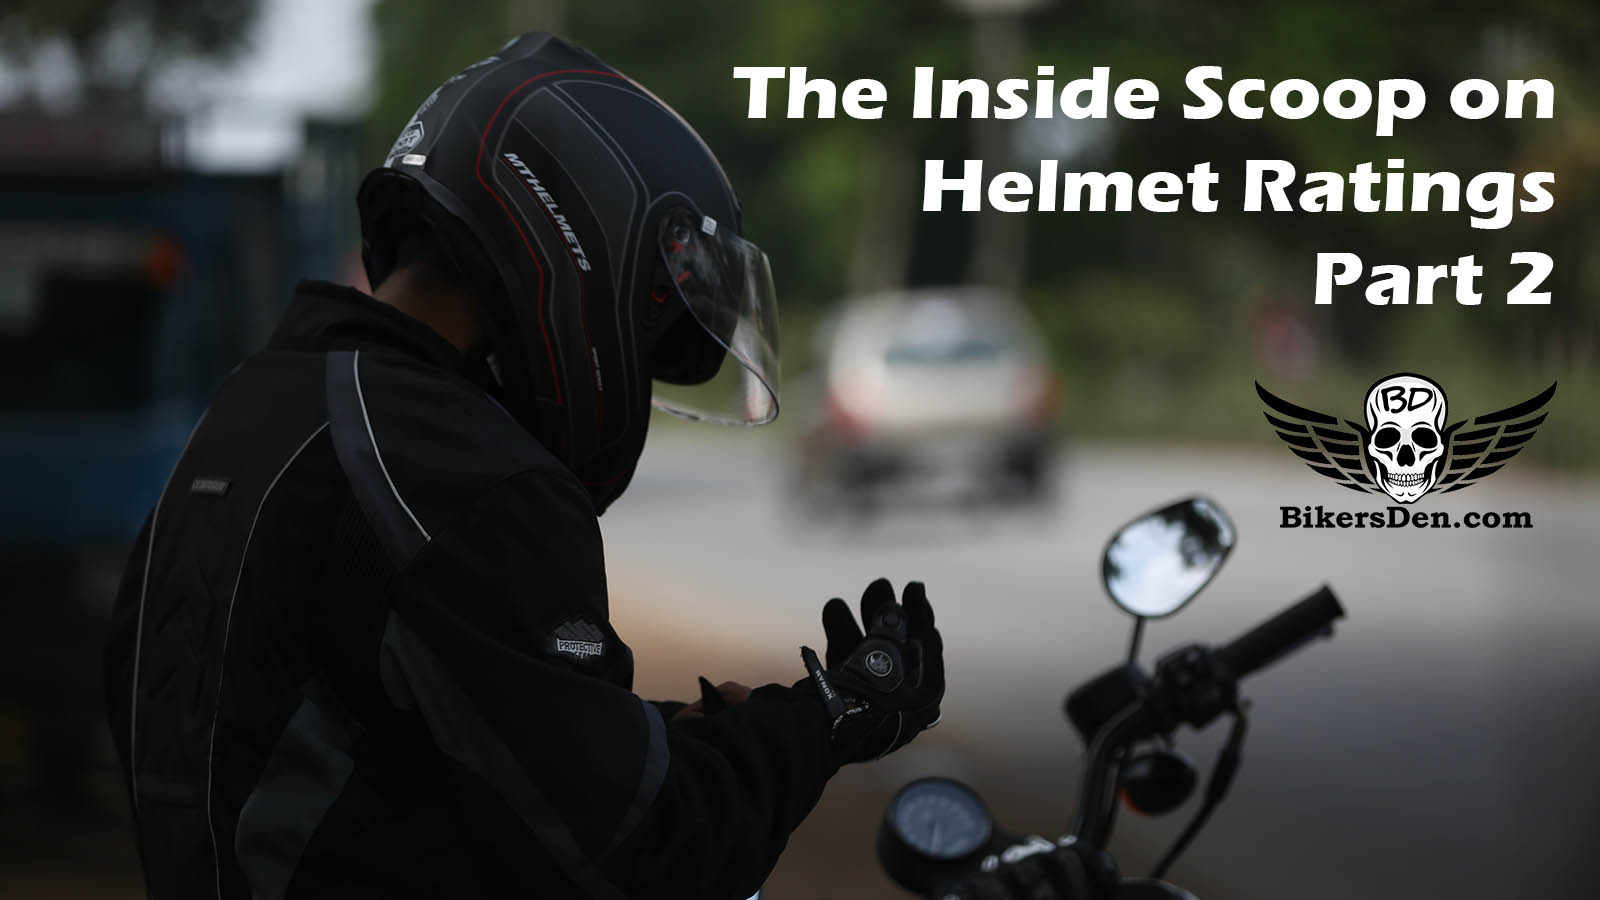 The Inside Scoop on Helmet Ratings - Part 2